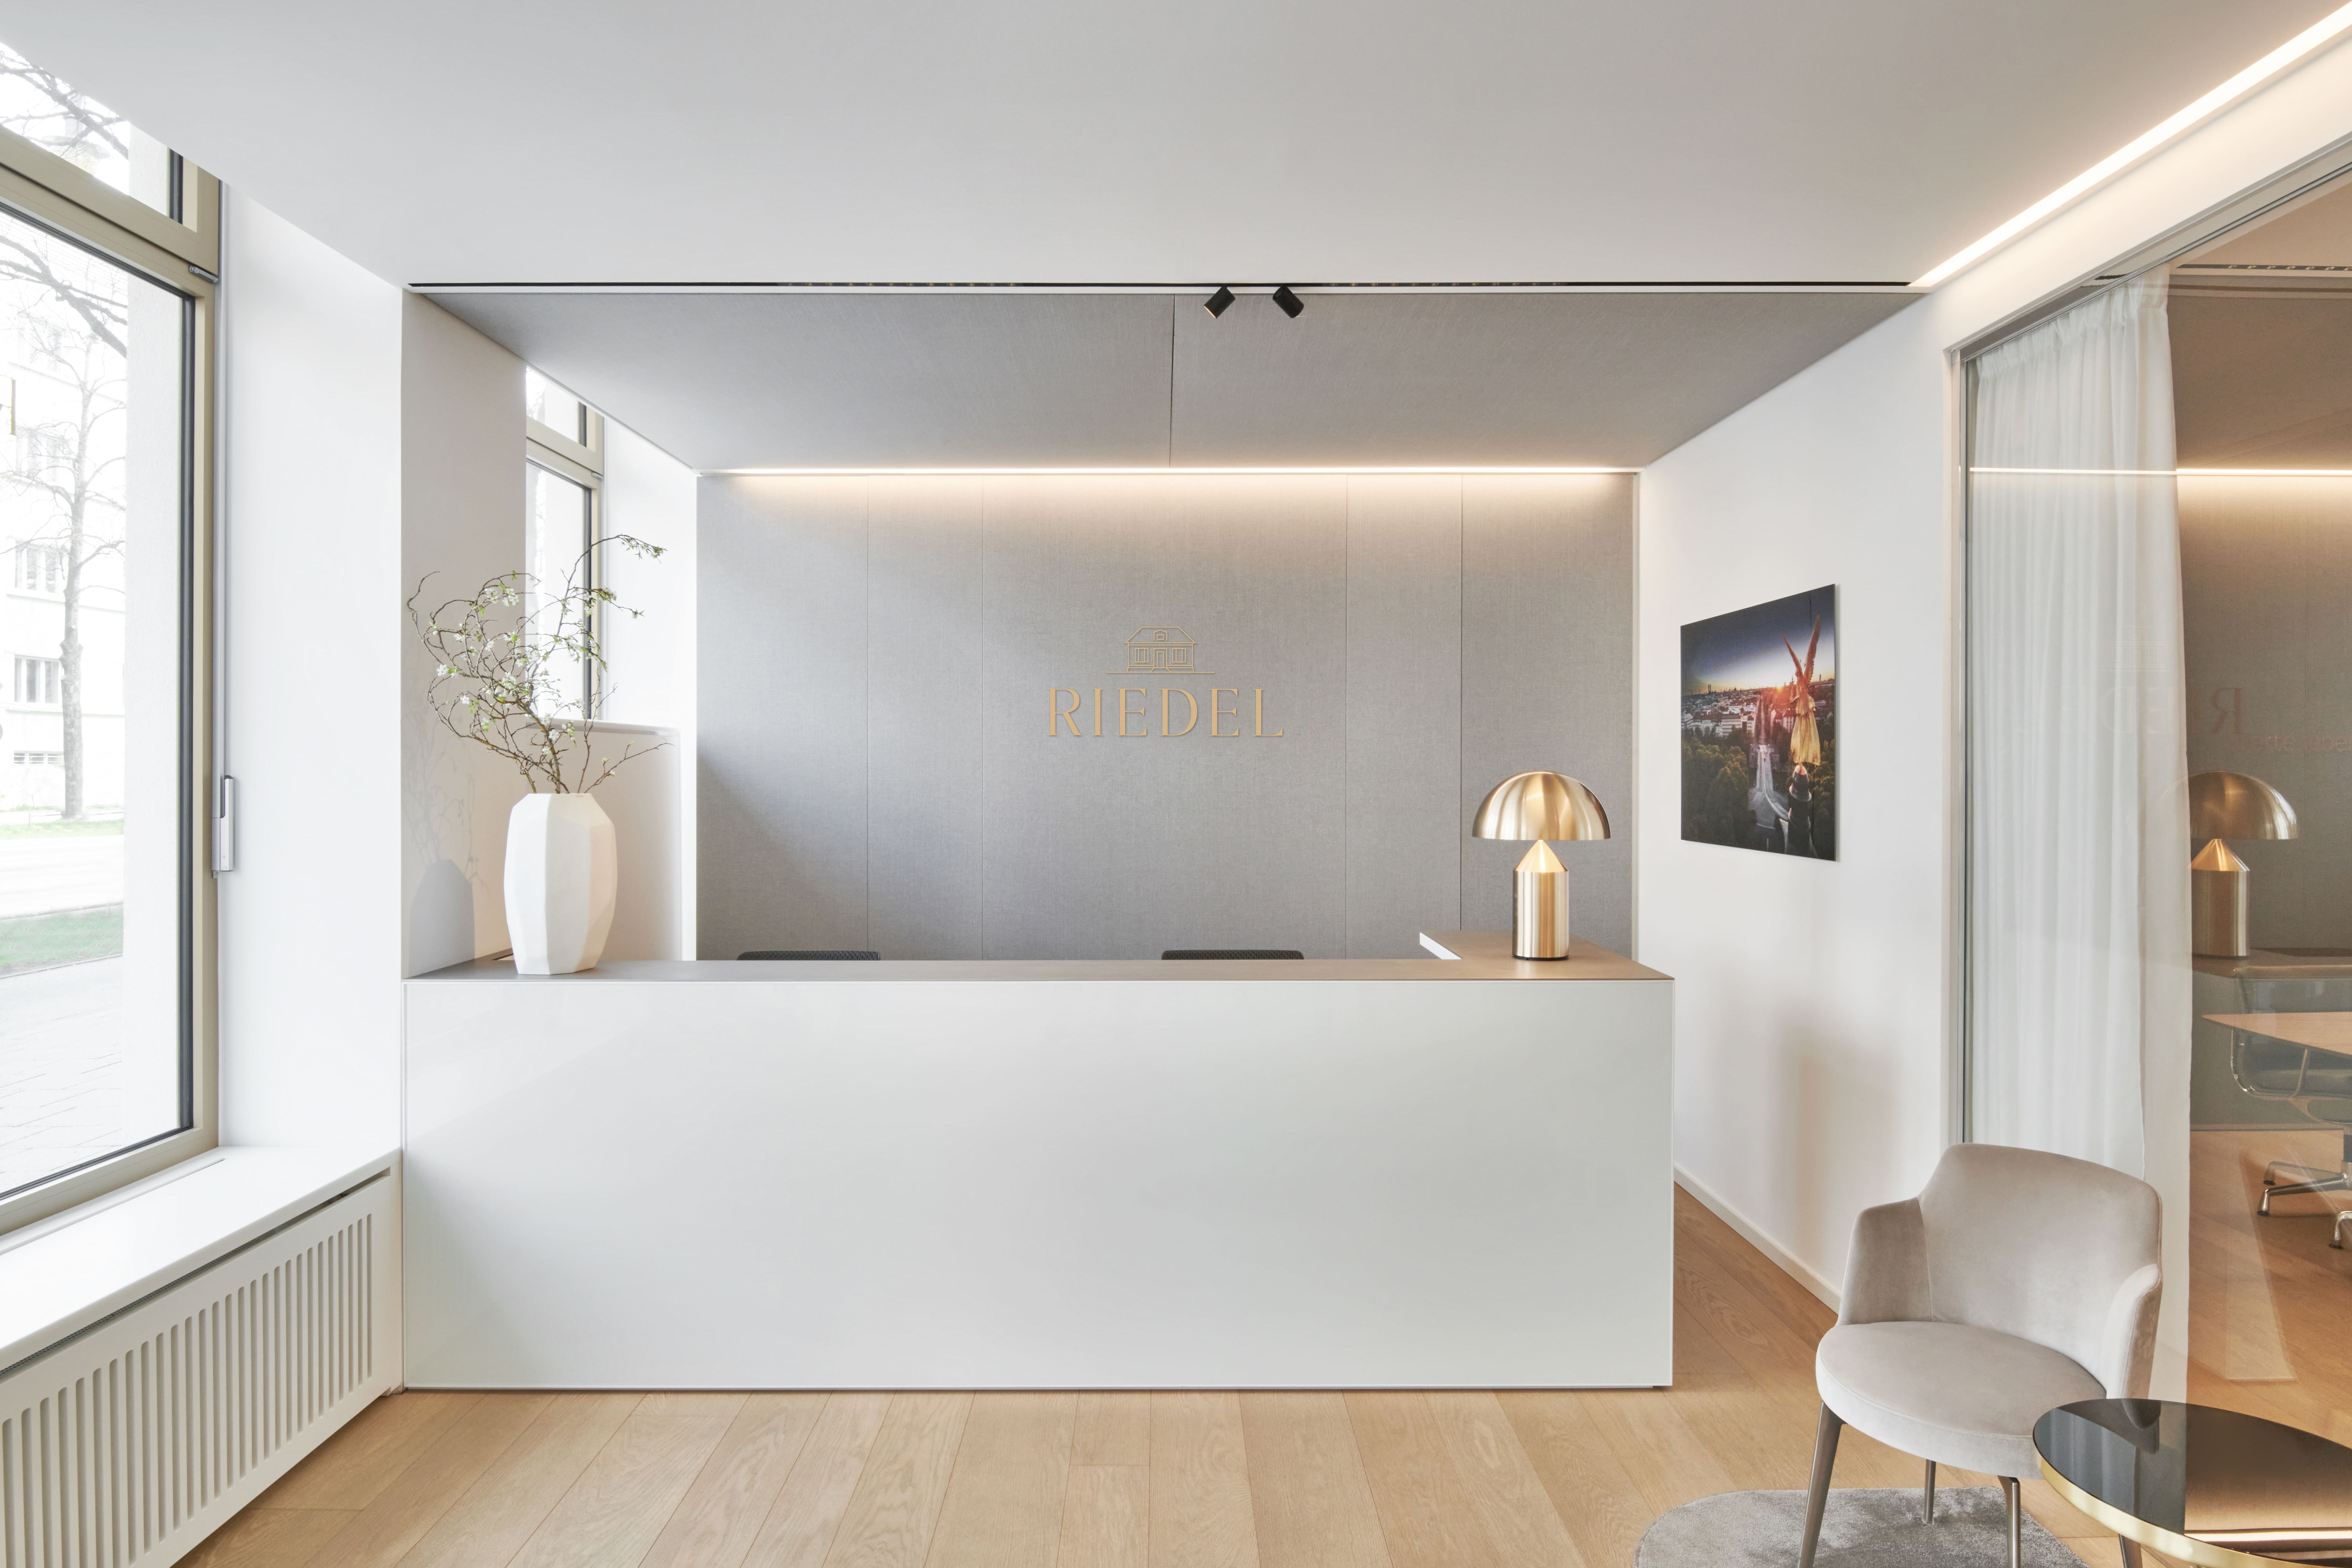 Reimann Architecture Interior Design Office Immobilien Riedel modern luxury edel